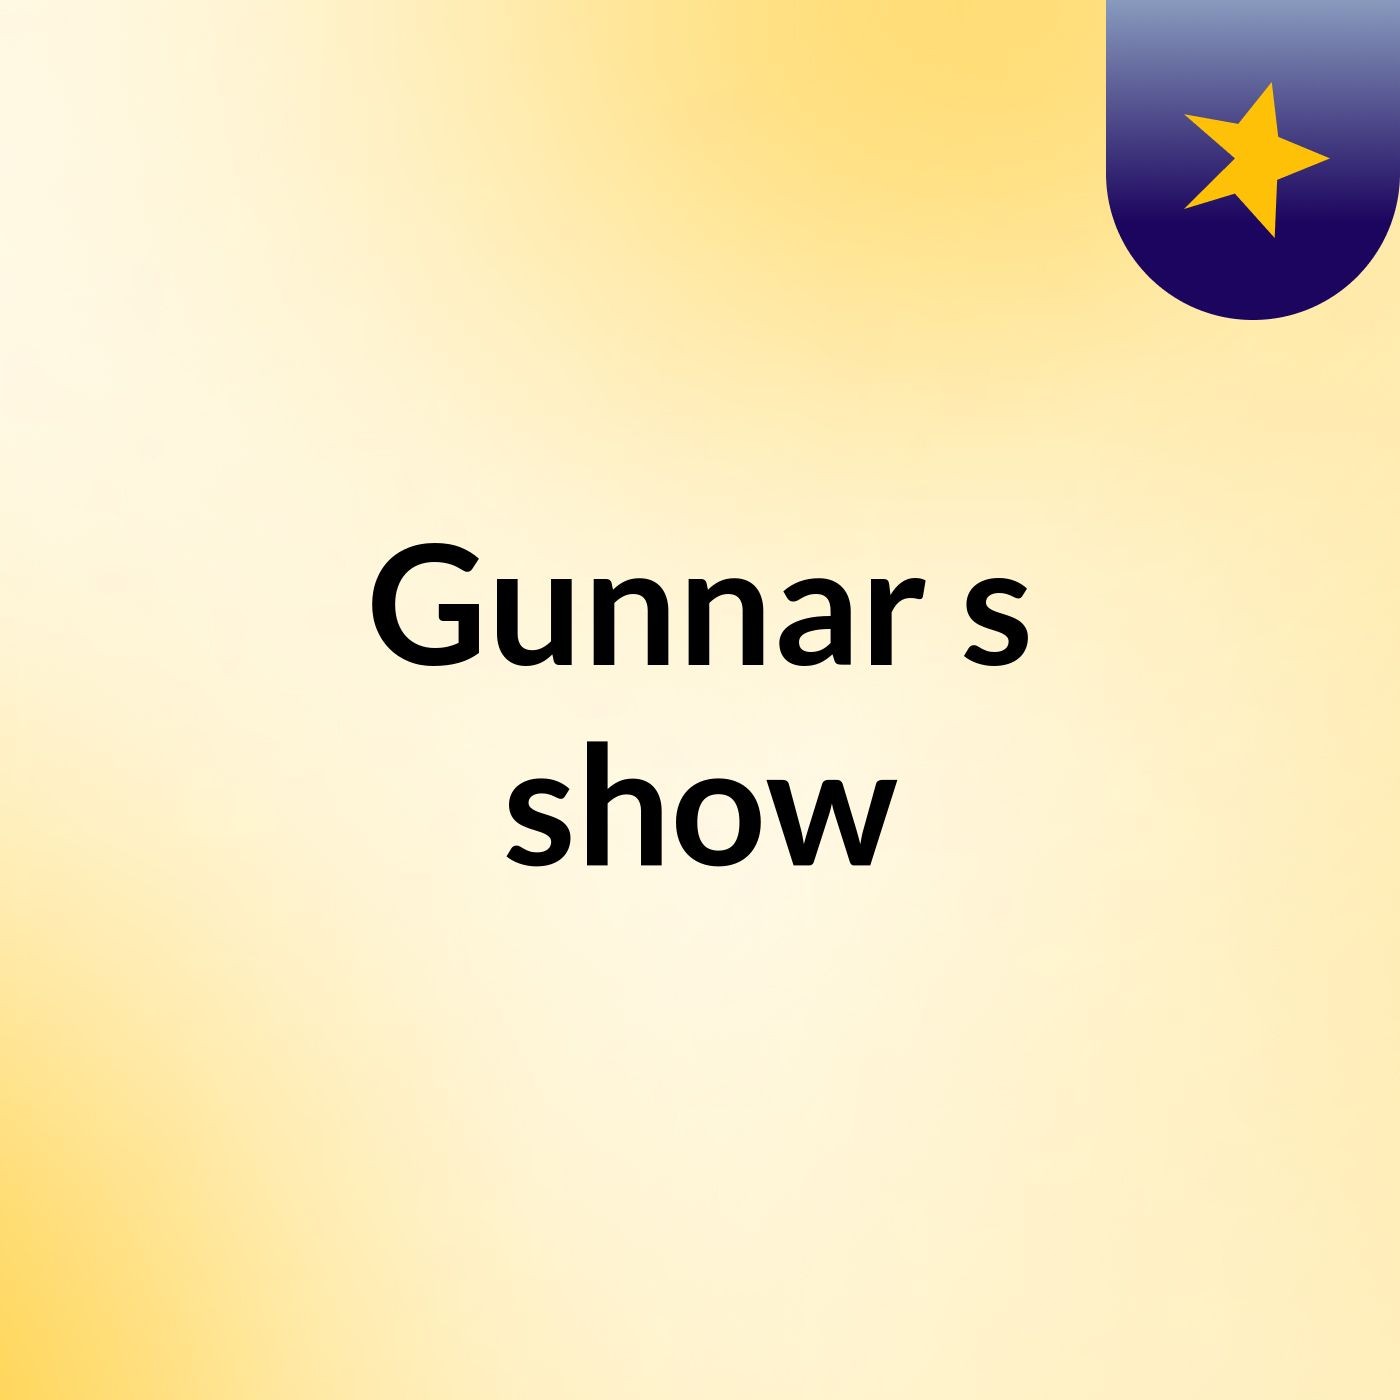 Gunnar's show